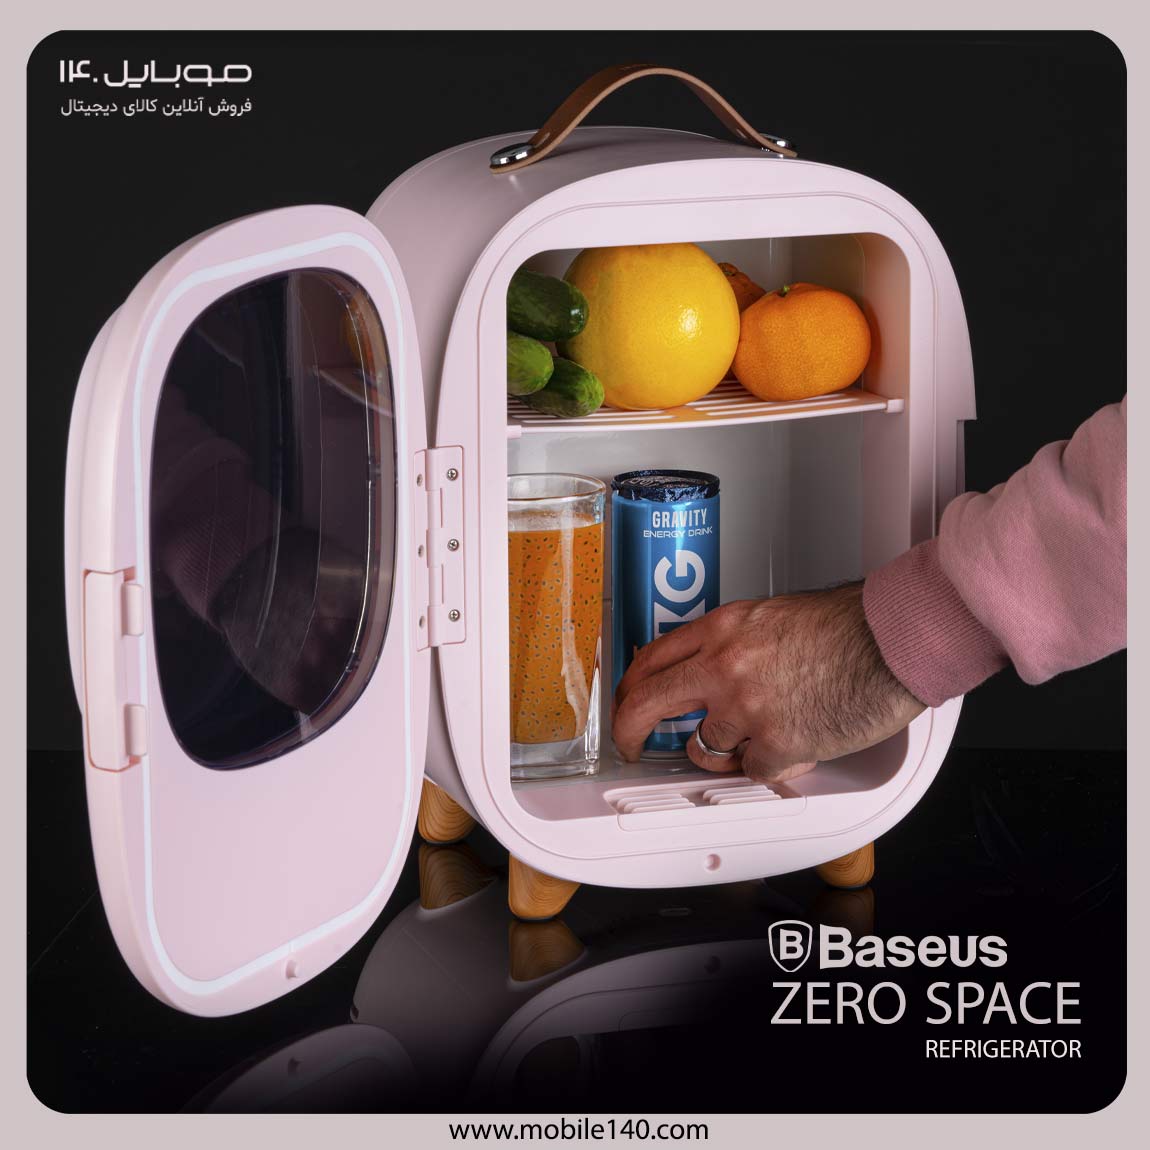 Baseus mini refrigerator and heater model Zero Space Refrigerato 3